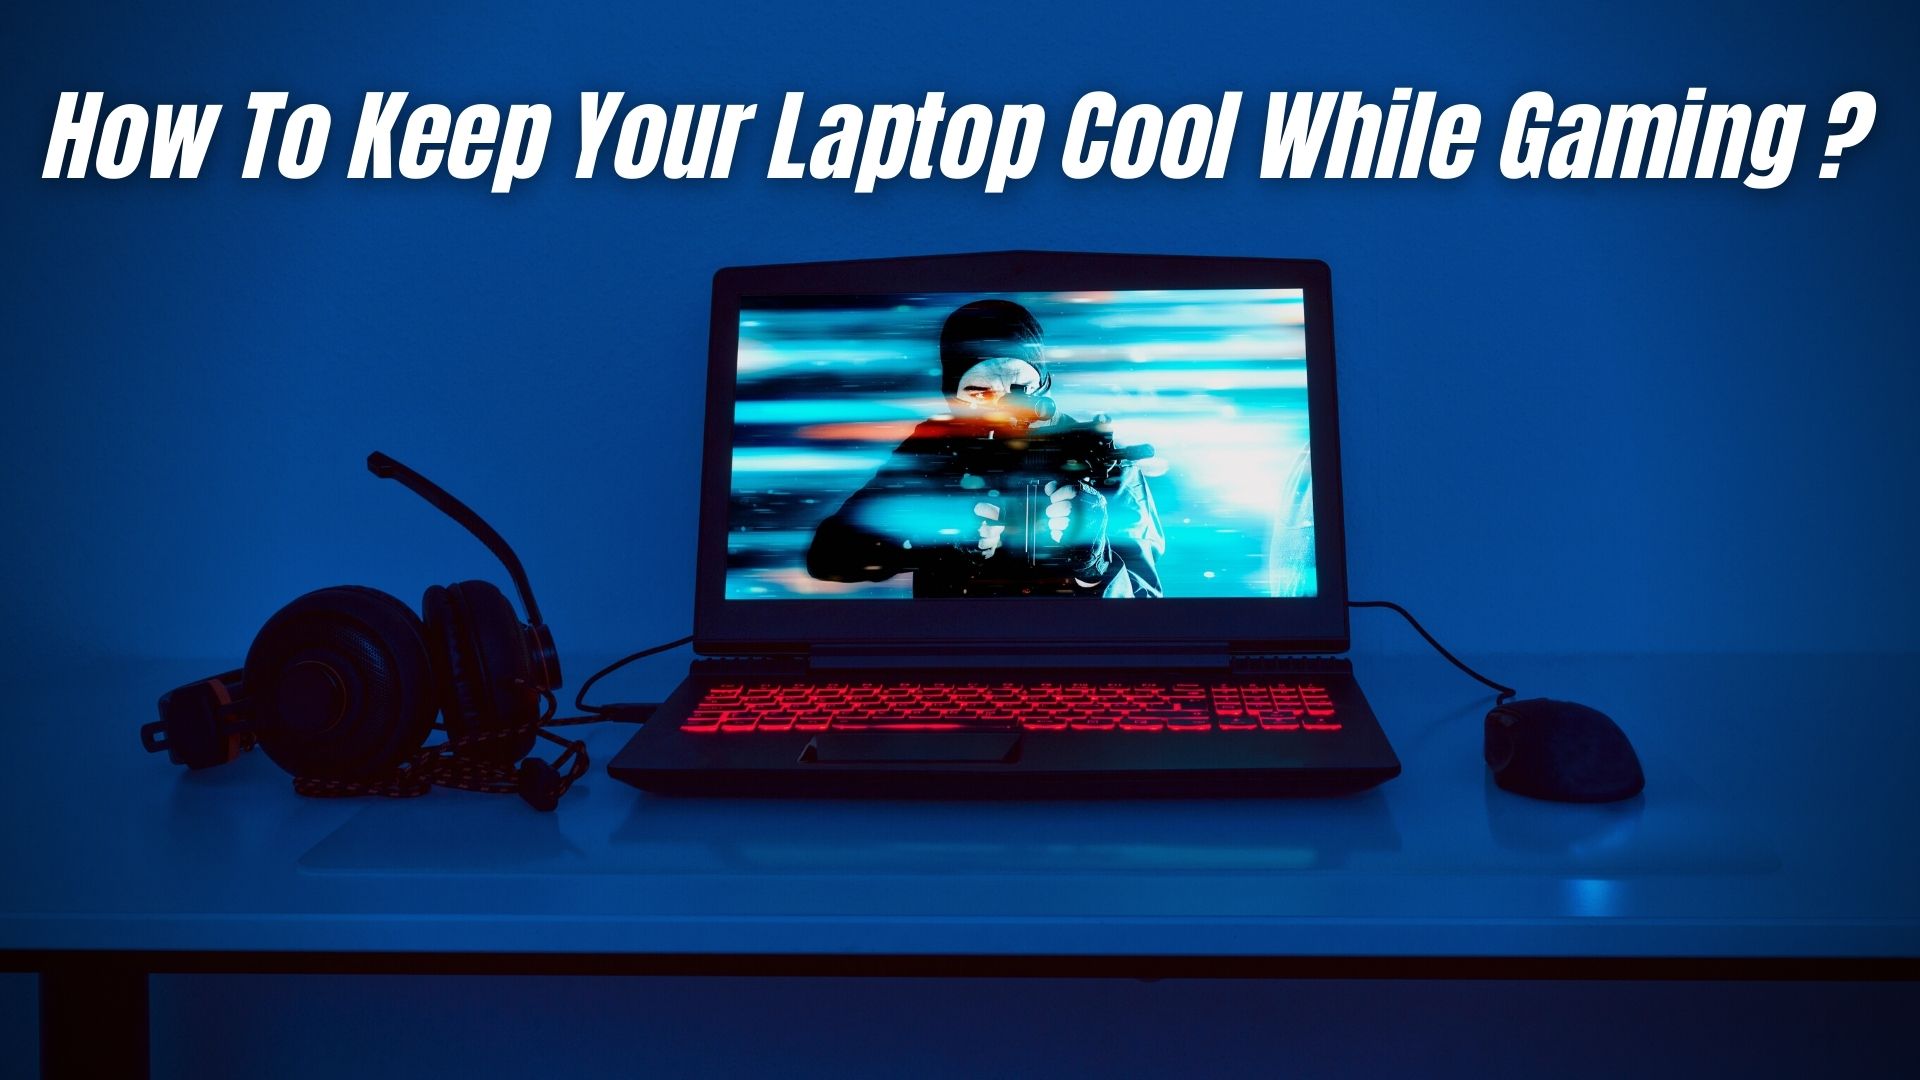 Keep Laptop Cool While Gaming